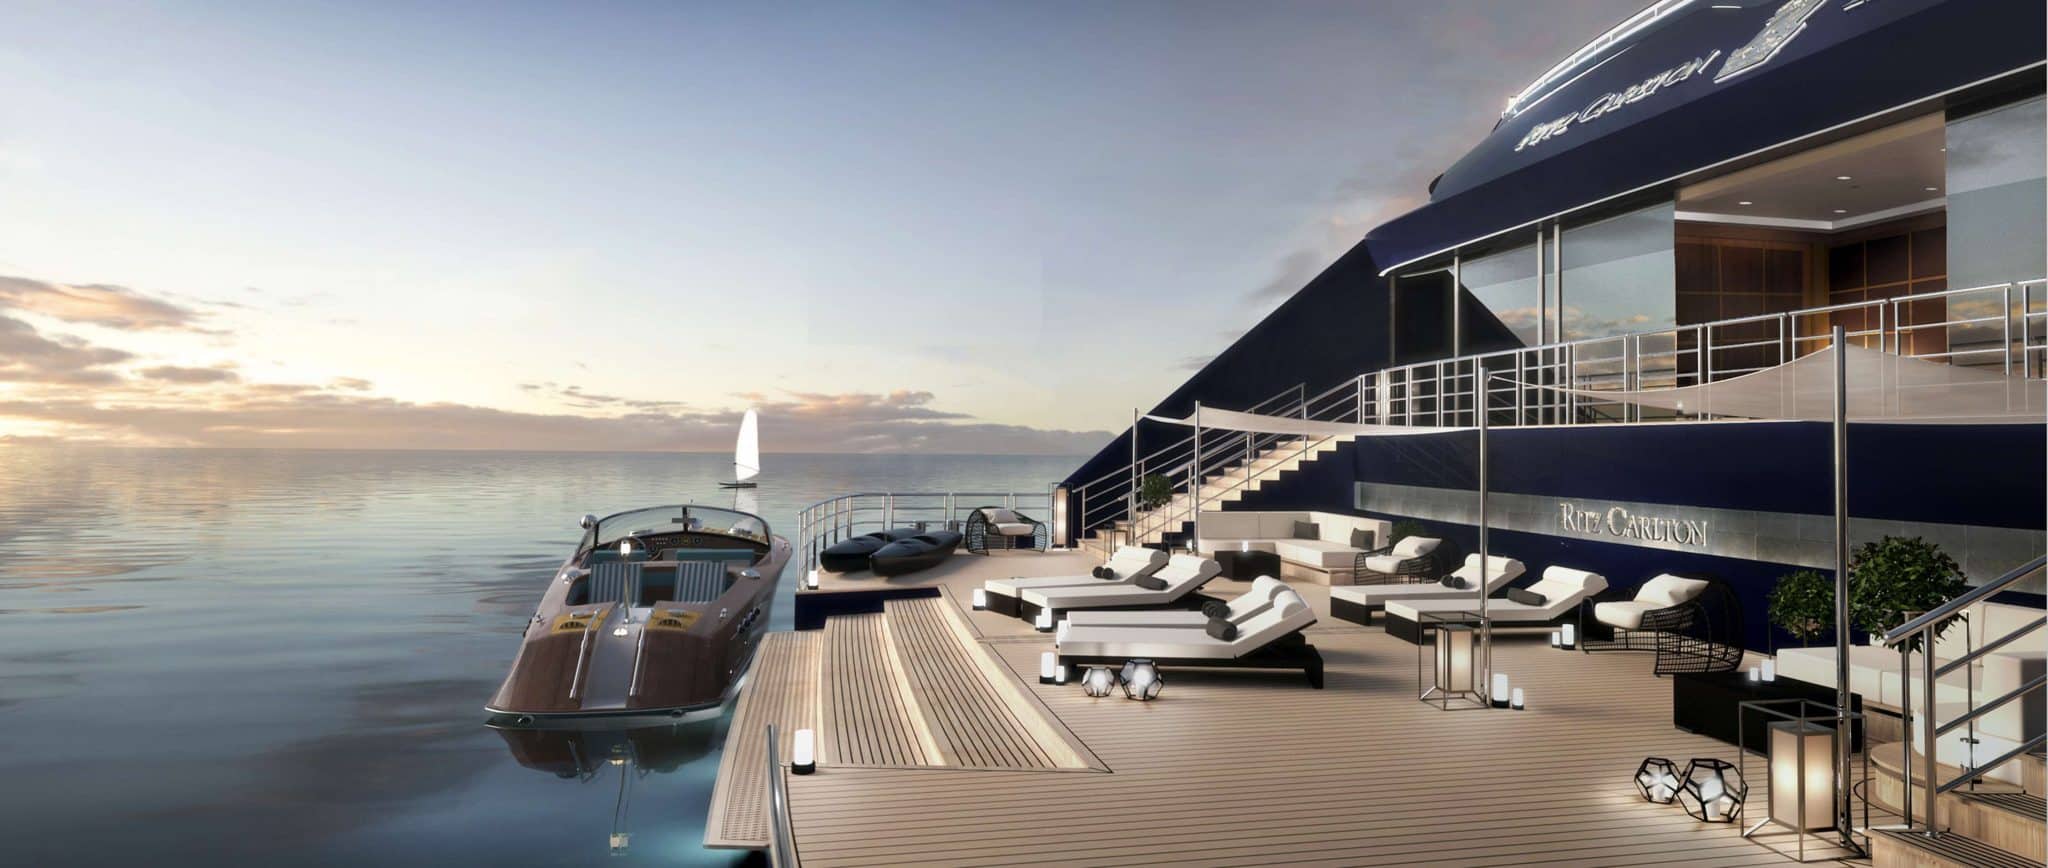 The Ritz-Carlton sticht in See: Erste Luxushotelmarke mit exklusiven Yacht-Kreuzfahrten ab 2019